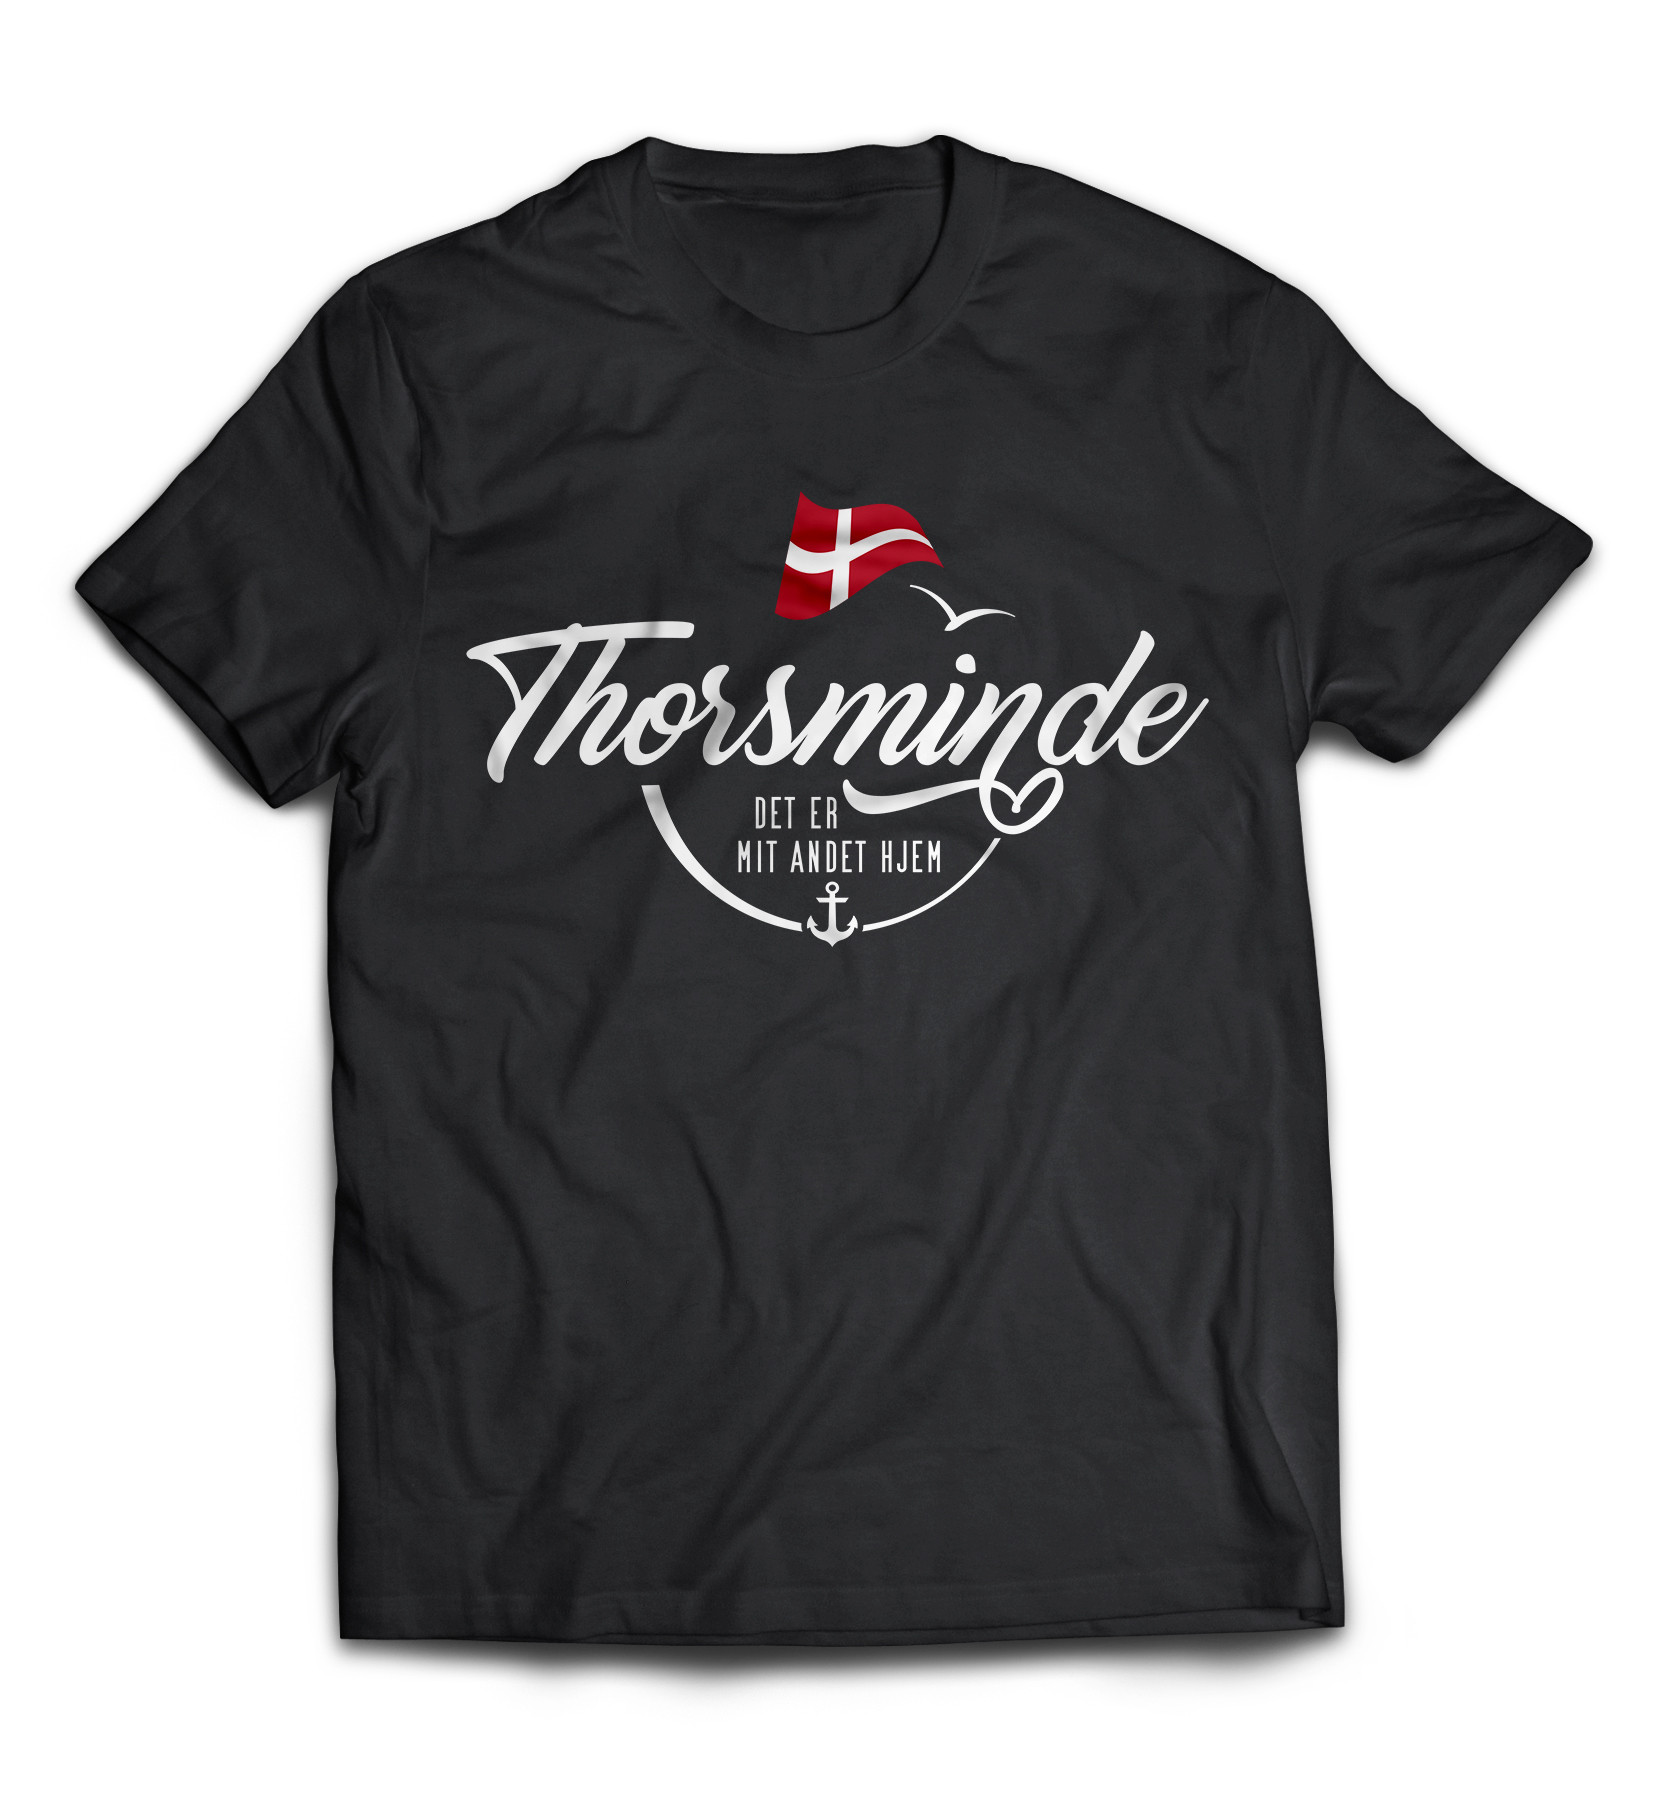 Dänemark - Meine zweite Heimat - T-Shirt "Thorsminde"